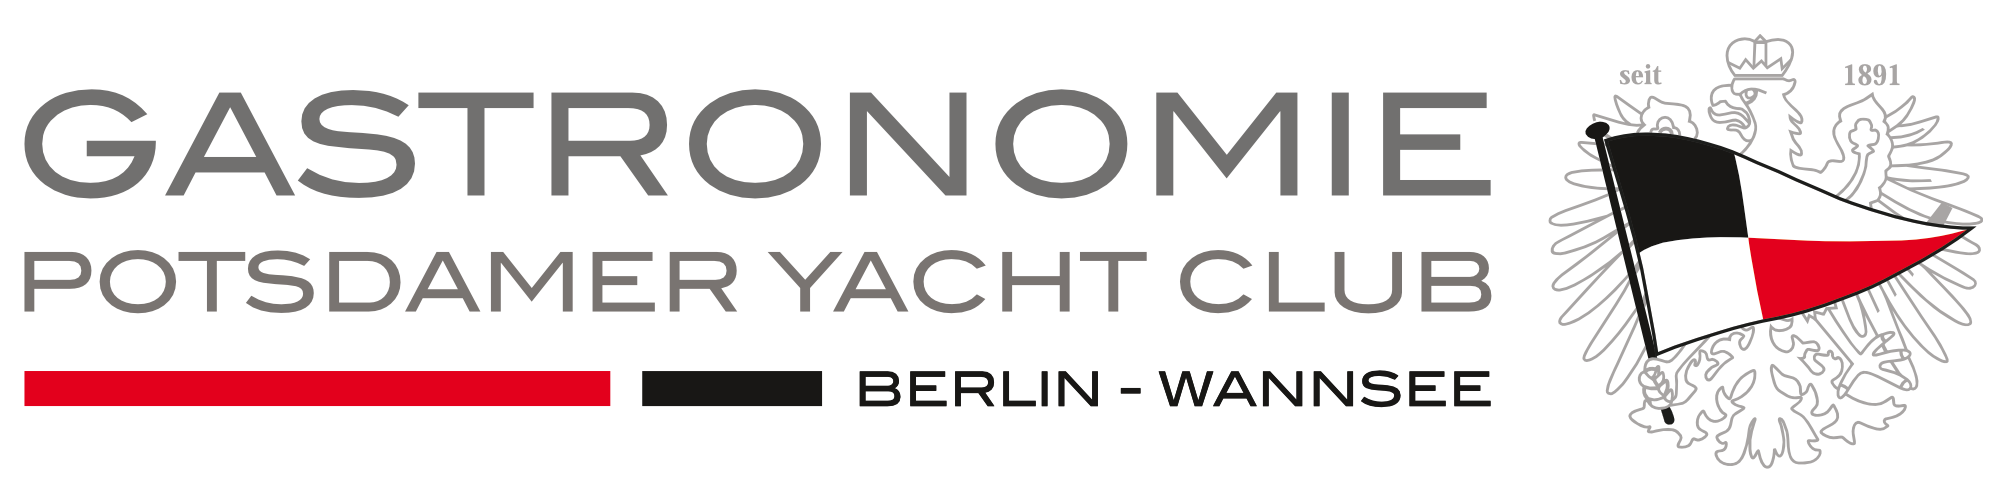 Gastronomie Potsdamer Yacht Club